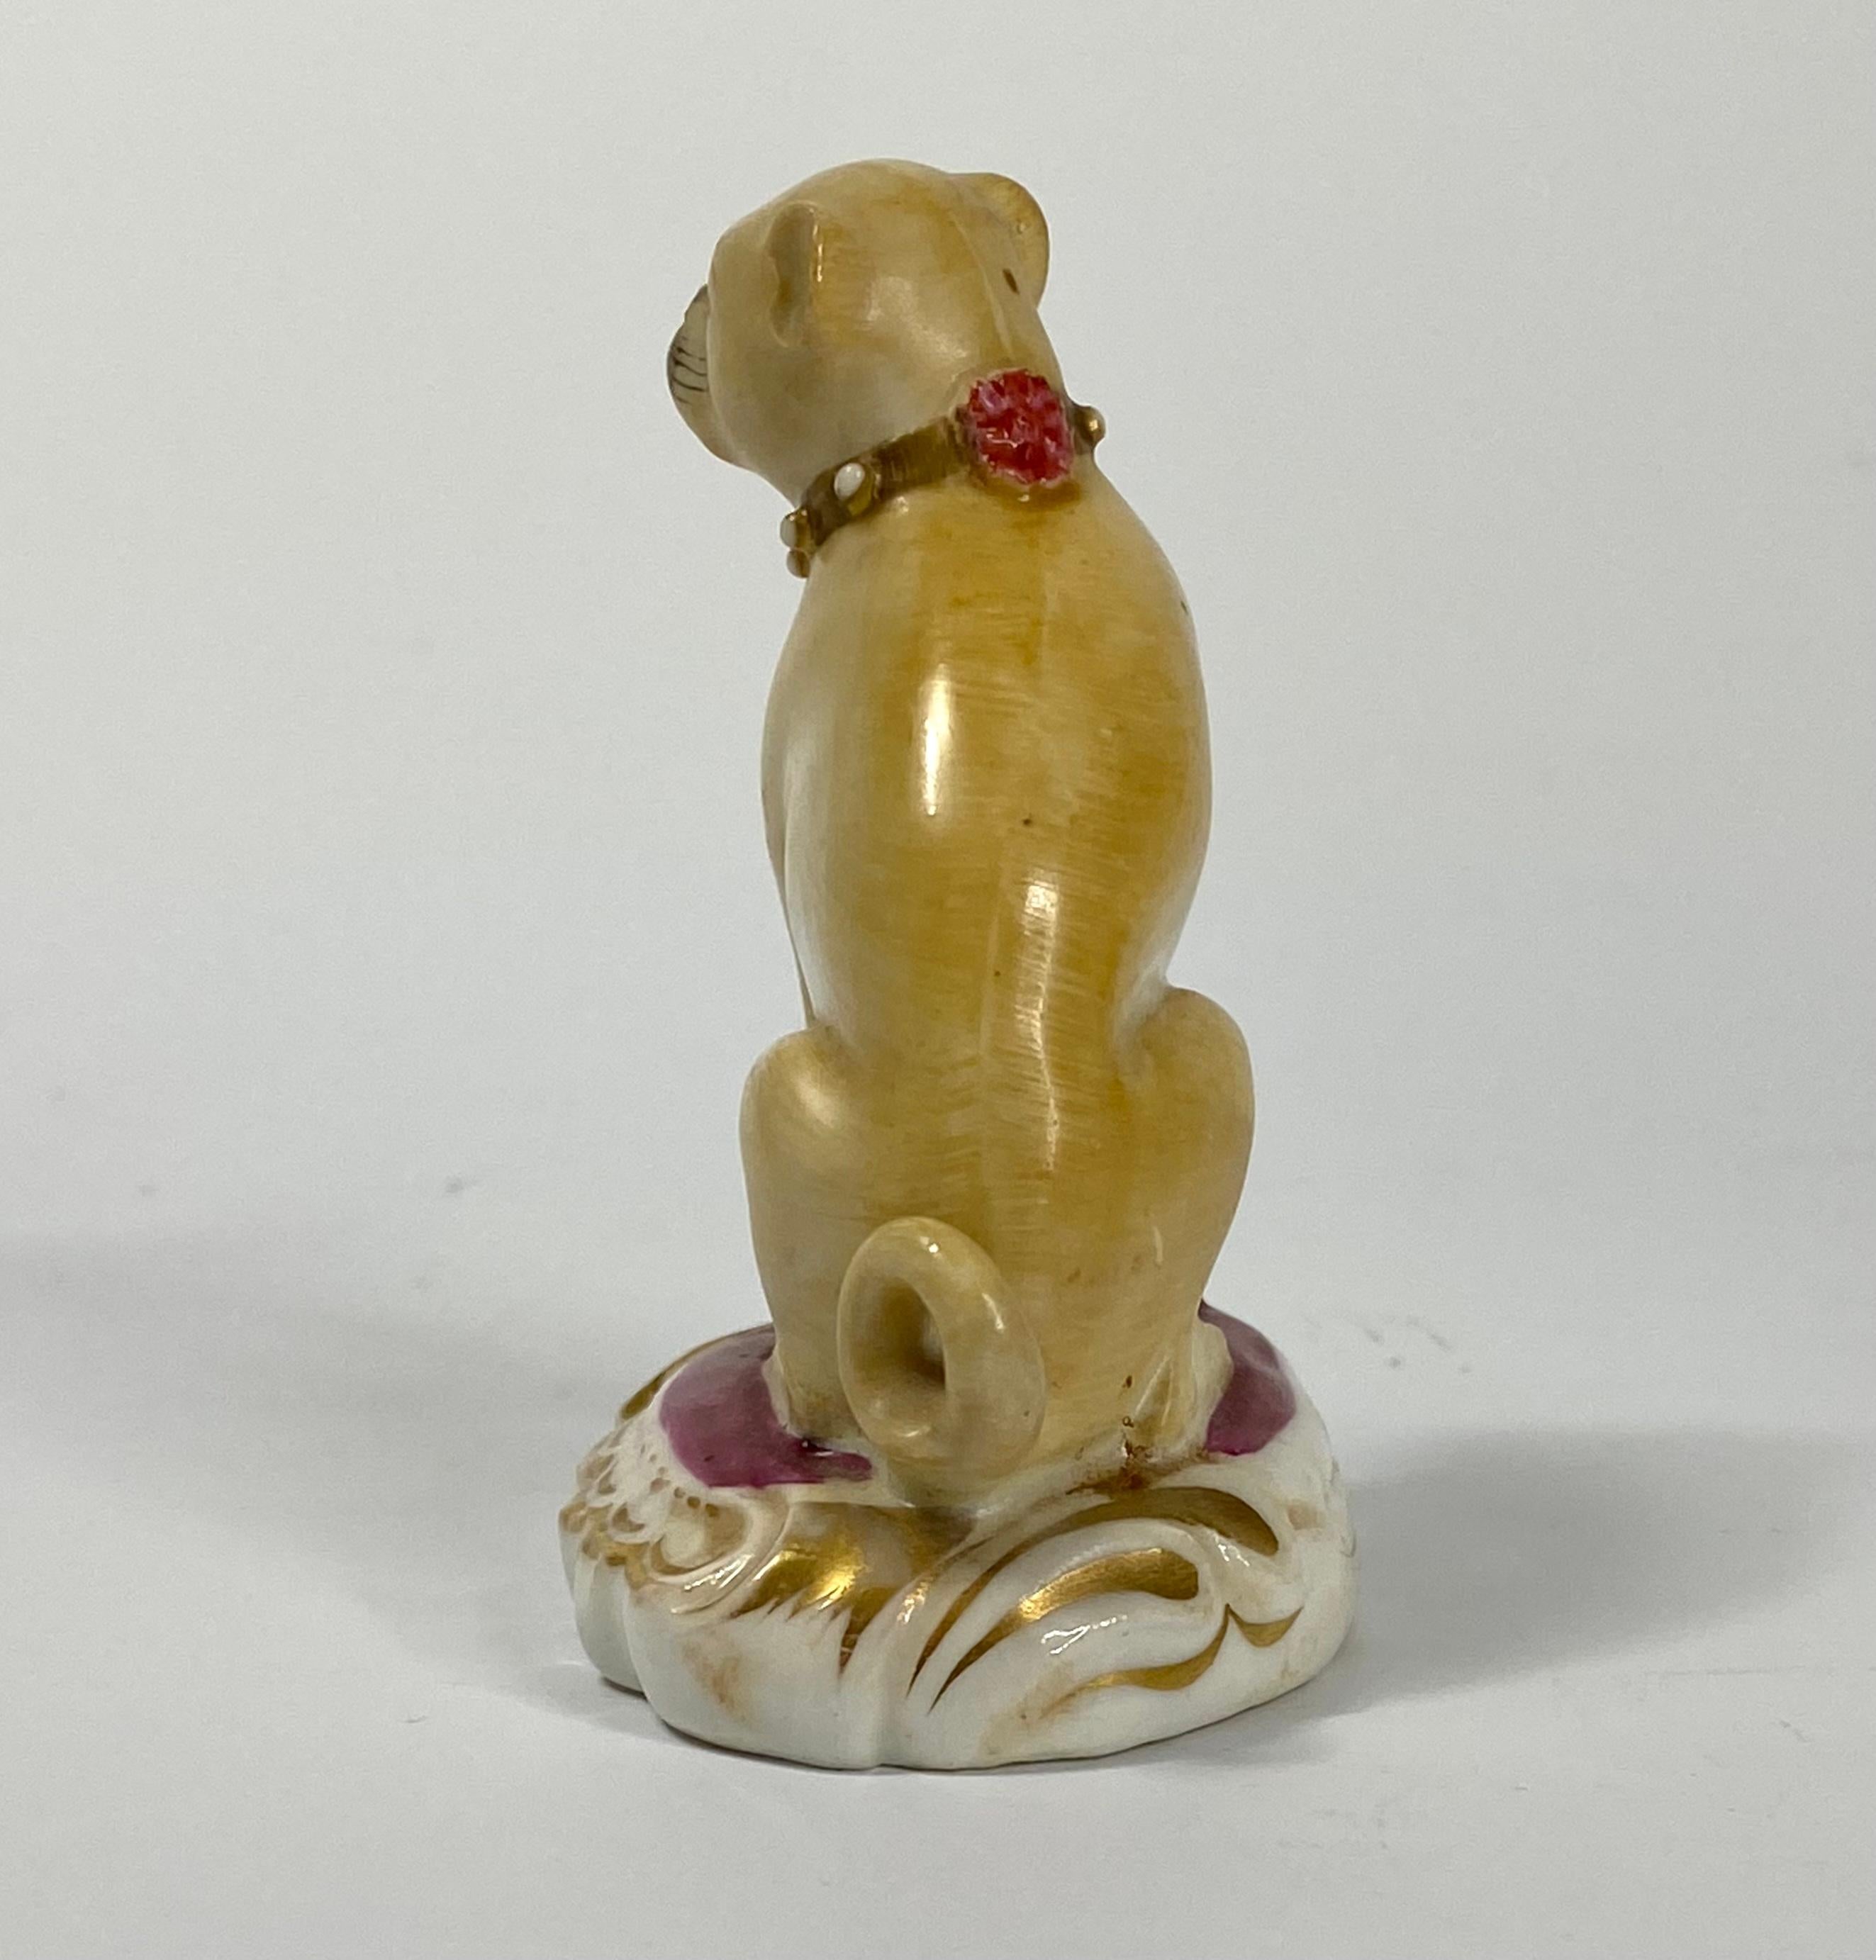 English Rockingham Porcelain Pug Dog, C. 1835